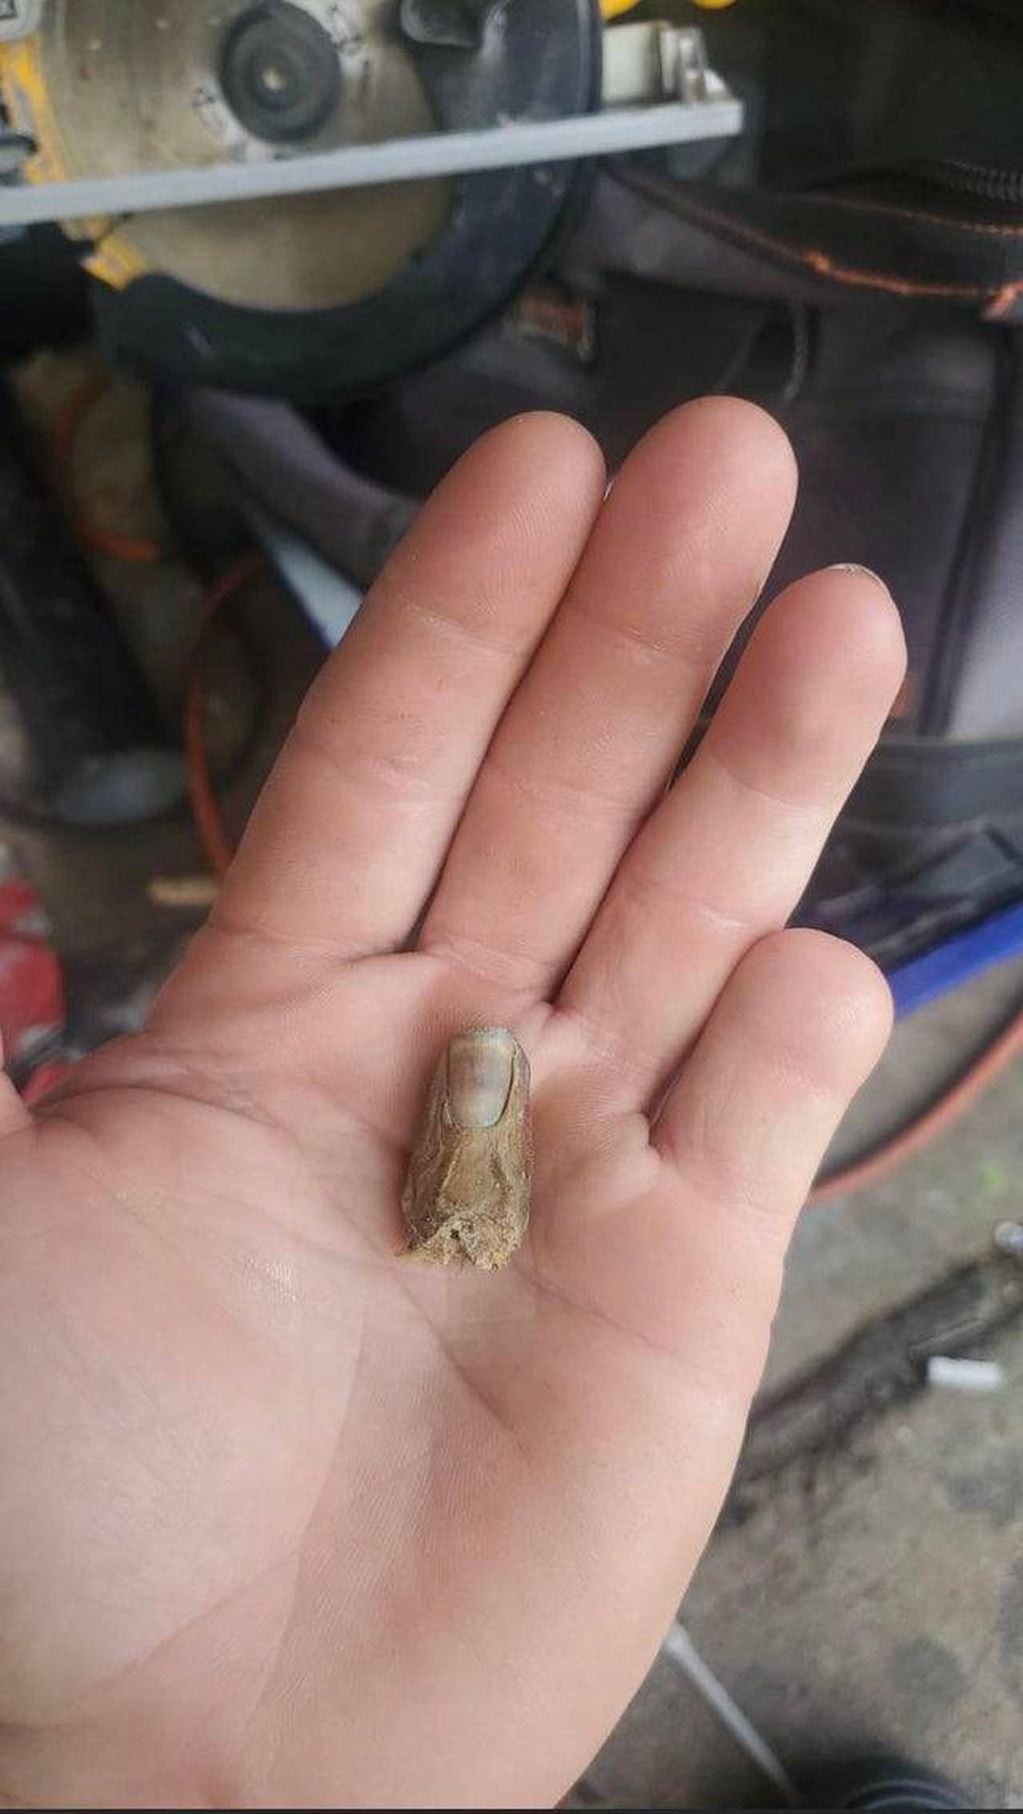 El joven compartió una foto en las redes sociales luego de encontrar su dedo meñique.